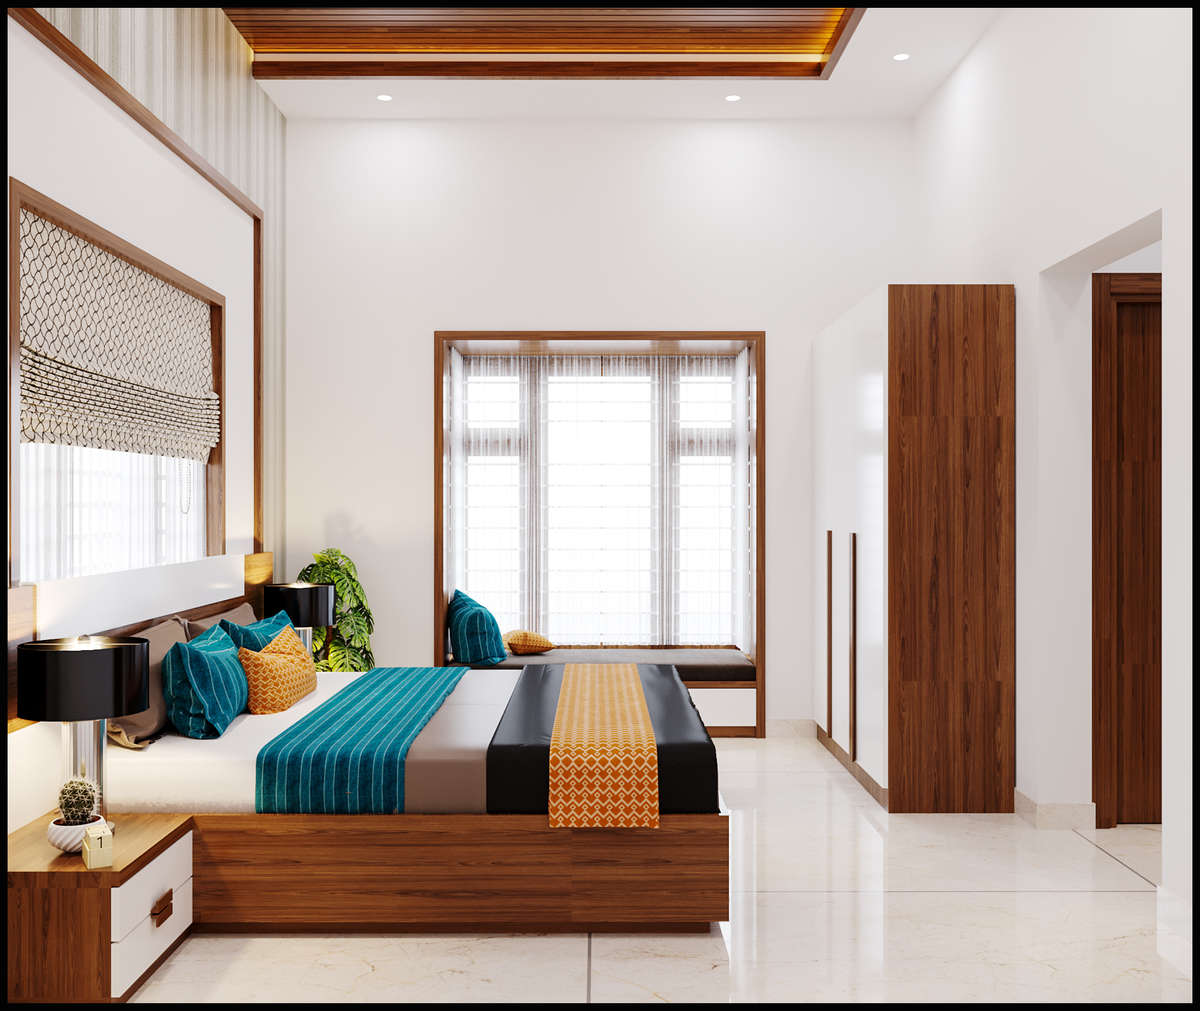 Furniture, Storage, Bedroom Designs by Interior Designer ABIMANYU M U, Thrissur | Kolo